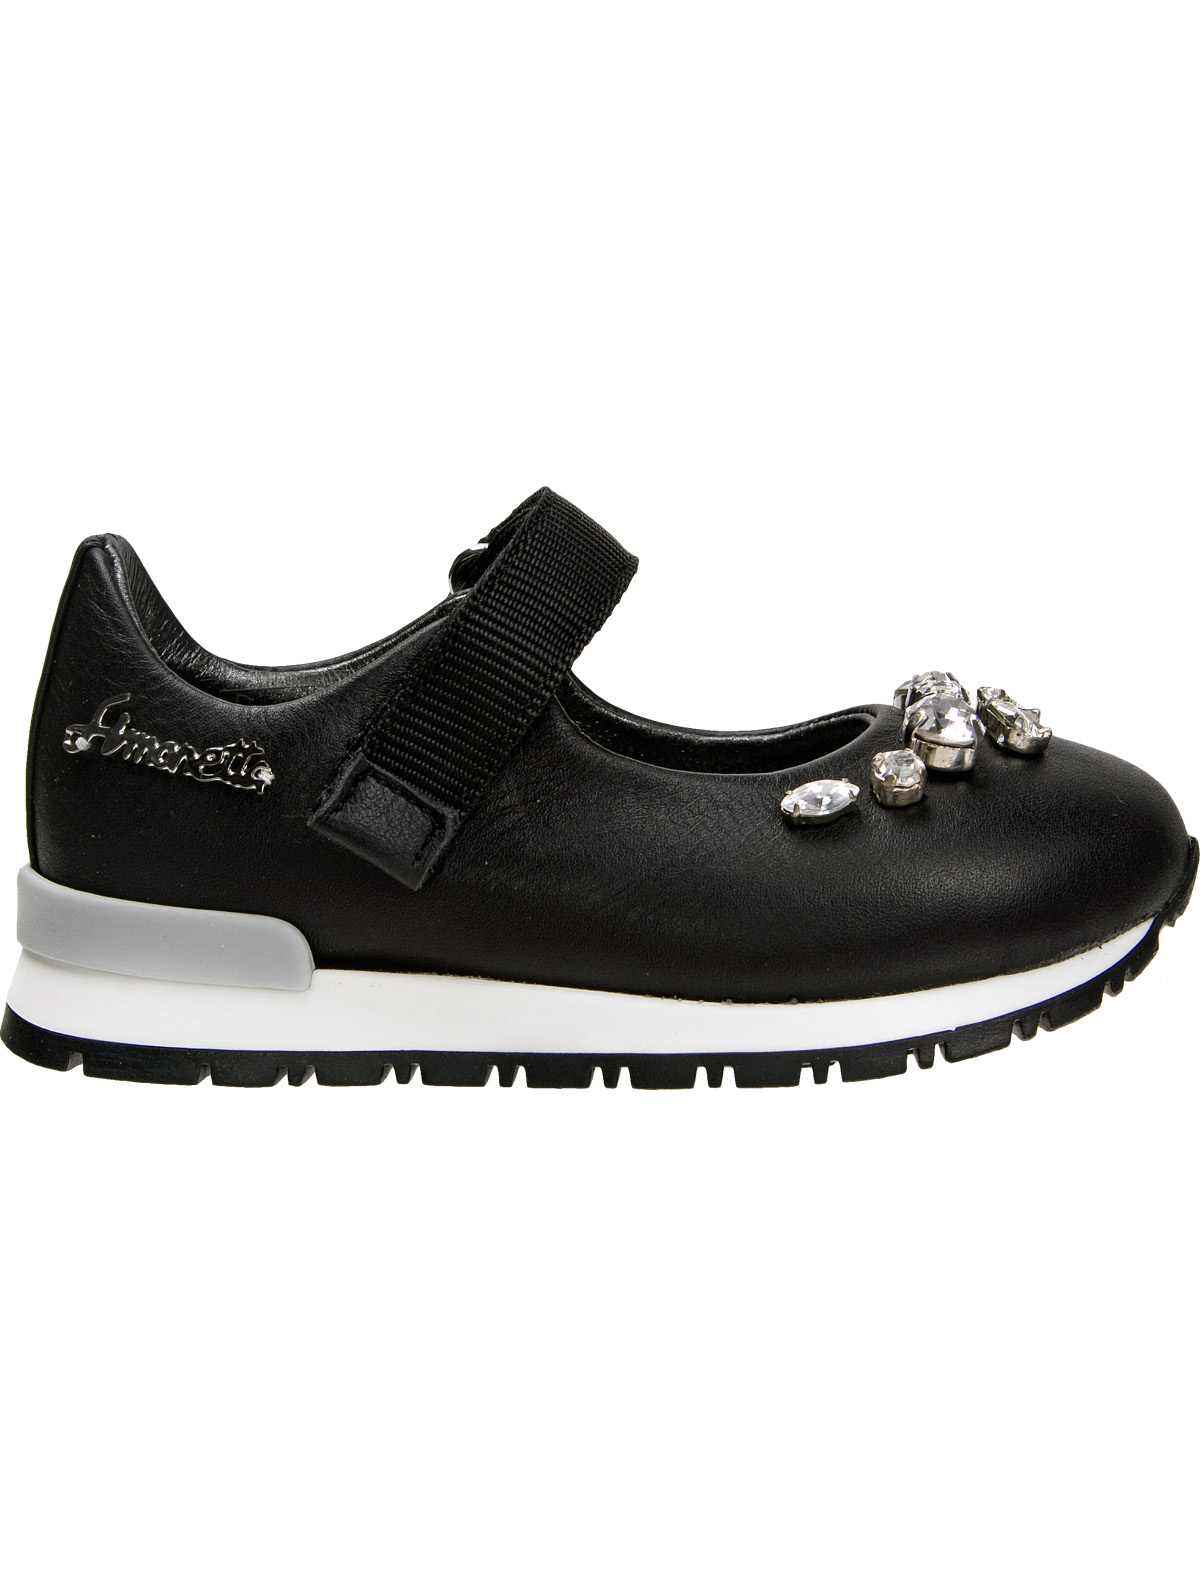 Туфли Simonetta 1912970, цвет черный, размер 21 2011109780340 - фото 2